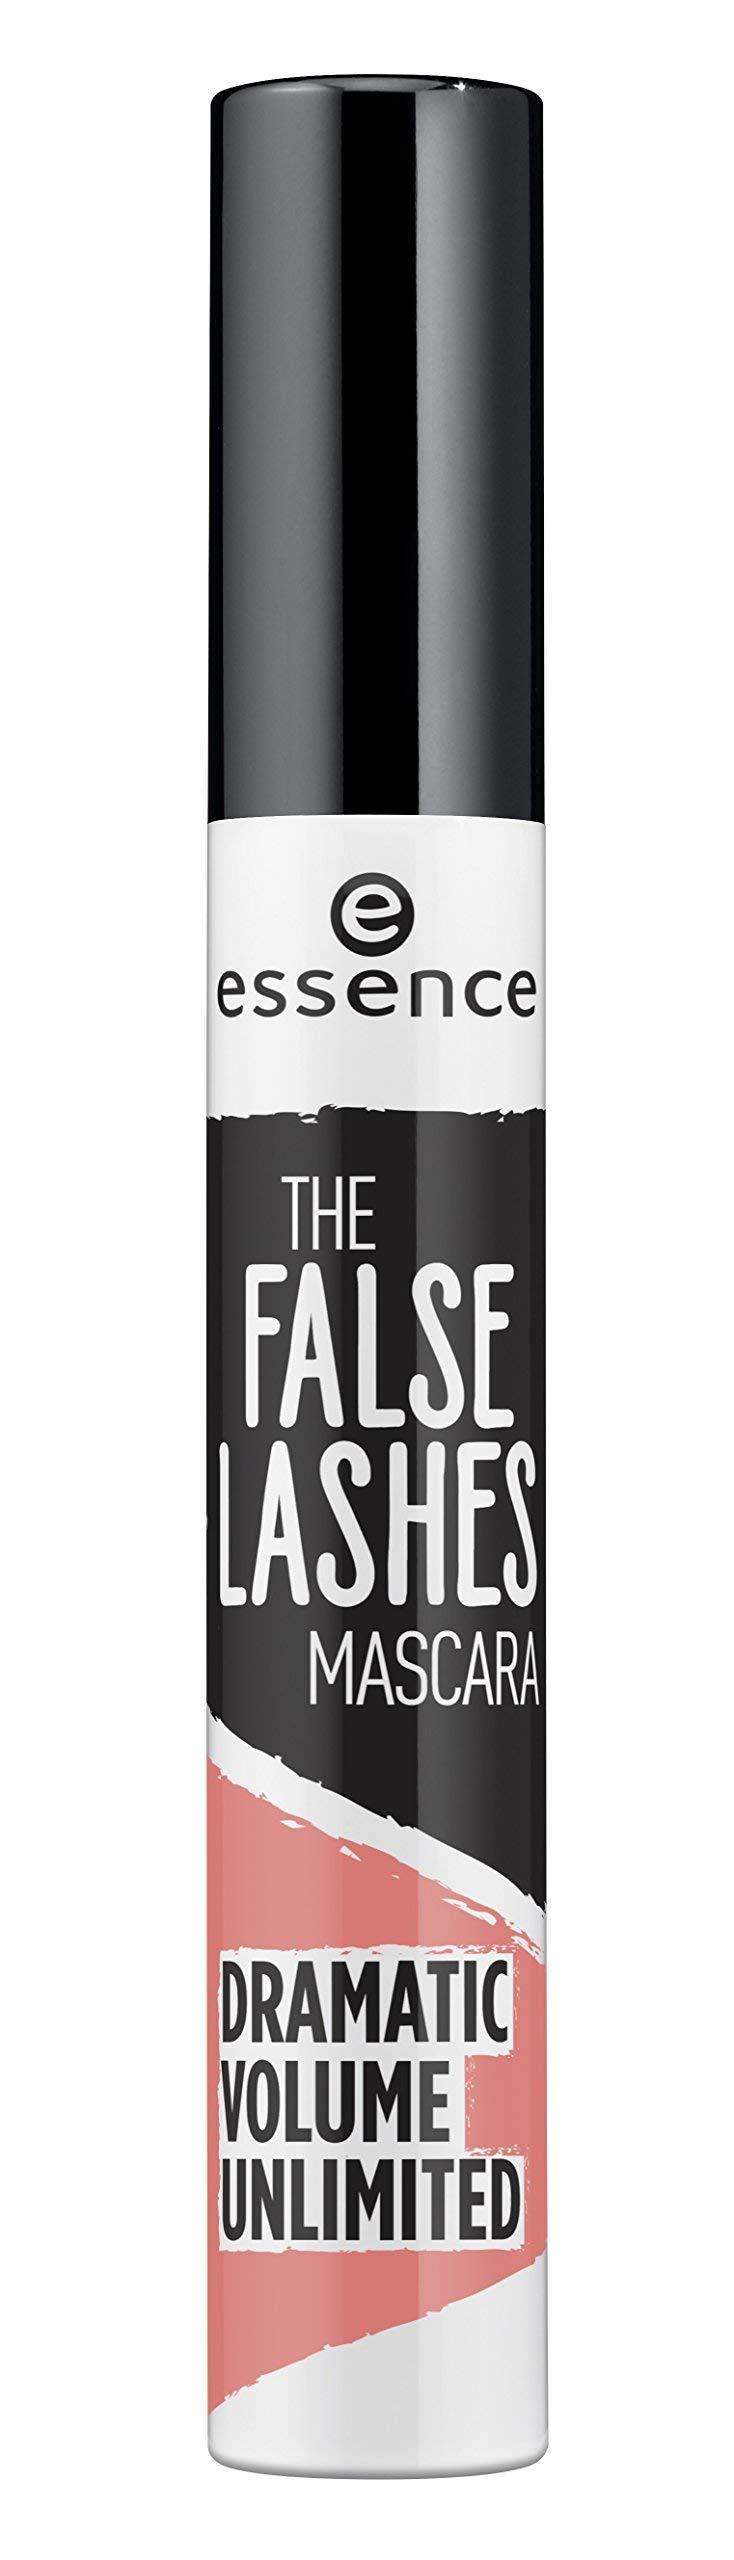 essence | The False Lashes Mascara Extreme Dramatic Volume Unlimited | Cruelty Free - Black - BeesActive Australia